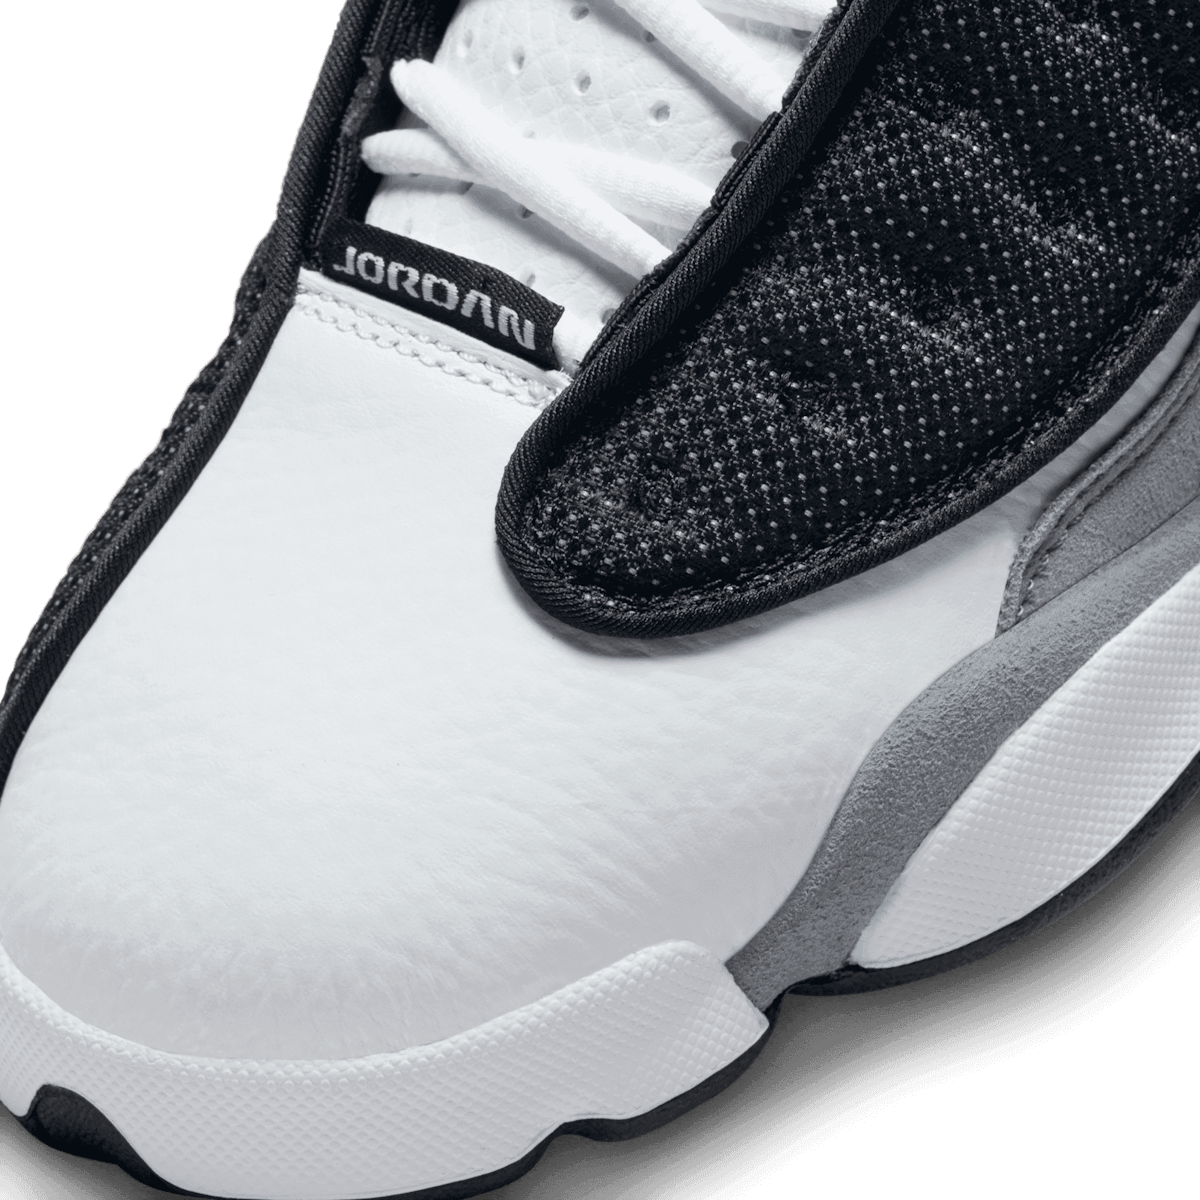 Air Jordan 13 Retro Black Flint (GS) Angle 4